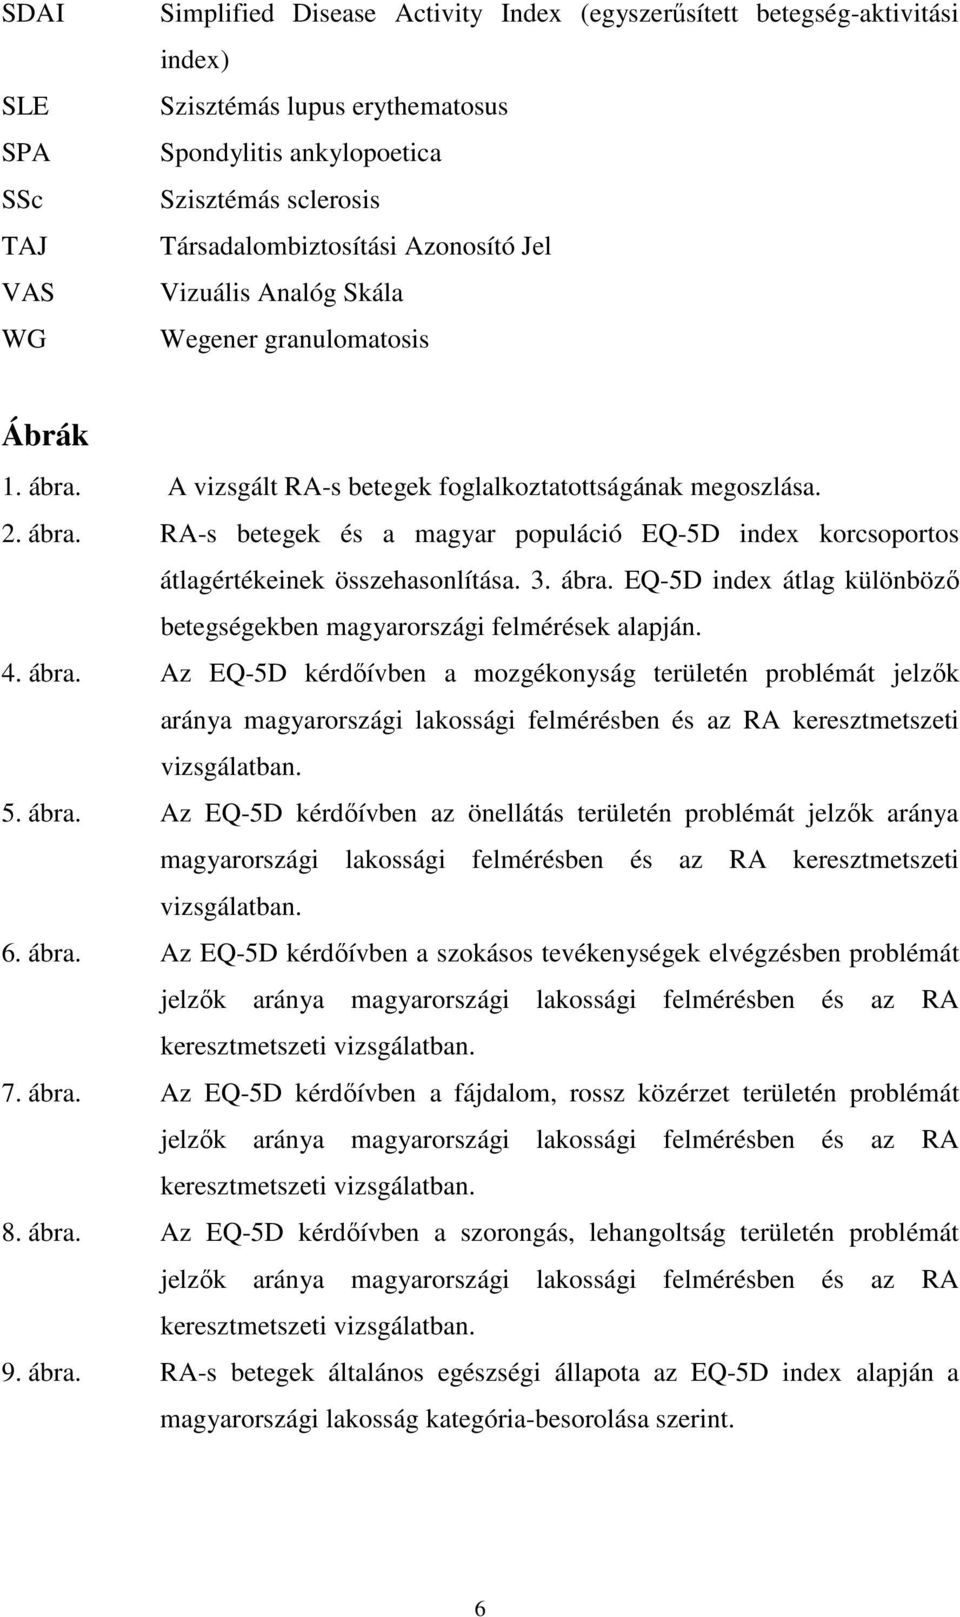 3. ábra. EQ-5D index átlag különbözı betegségekben magyarországi felmérések alapján. 4. ábra. Az EQ-5D kérdıívben a mozgékonyság területén problémát jelzık aránya magyarországi lakossági felmérésben és az RA keresztmetszeti vizsgálatban.